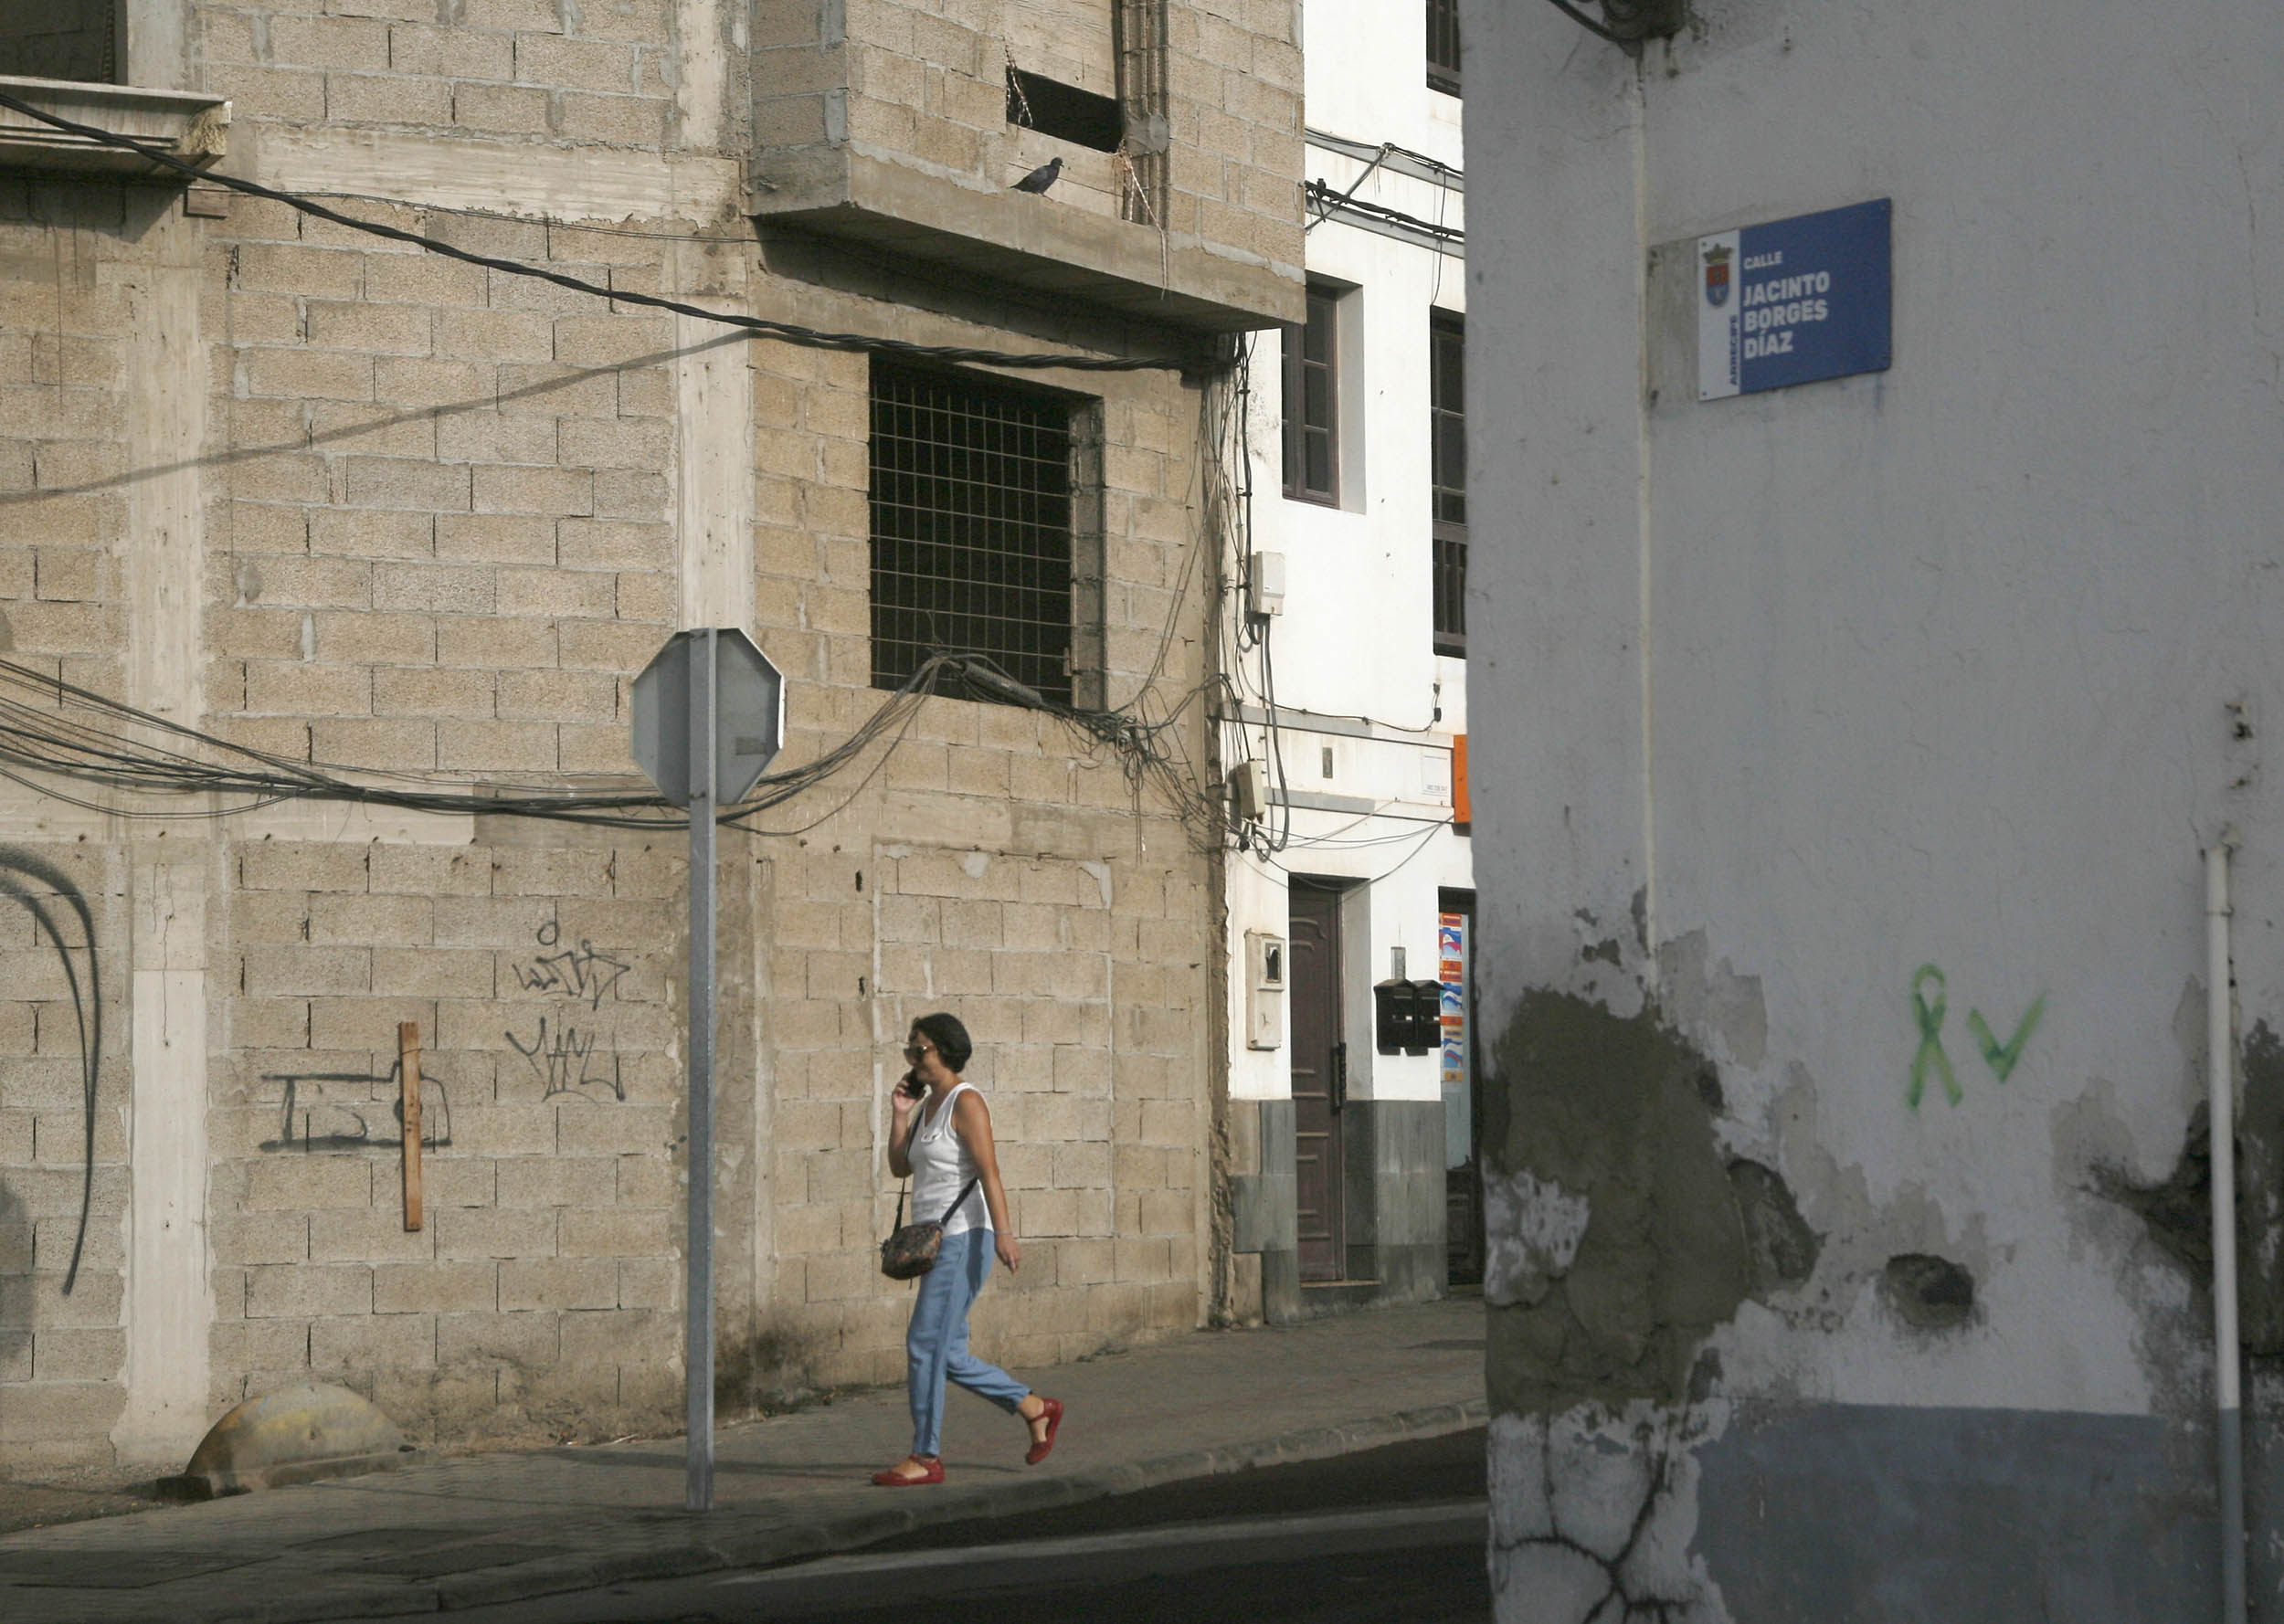 La calle Jacinto Borges, uno de los vestigios franquistas que permanecen en Arrecife. Foto: José Luis Carrasco.